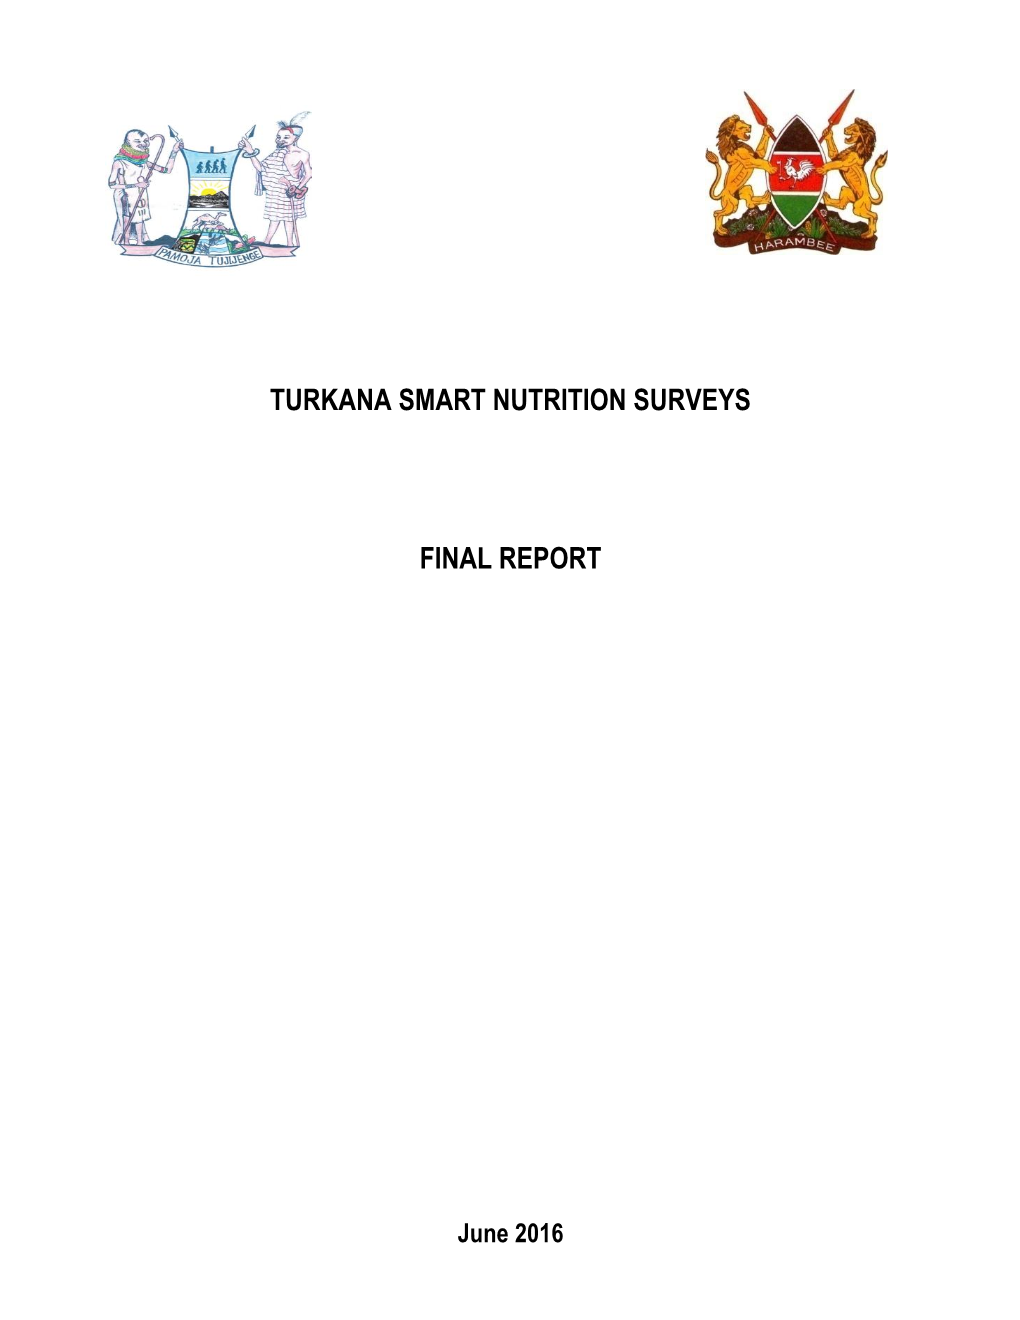 Turkana Smart Nutrition Surveys Final Report